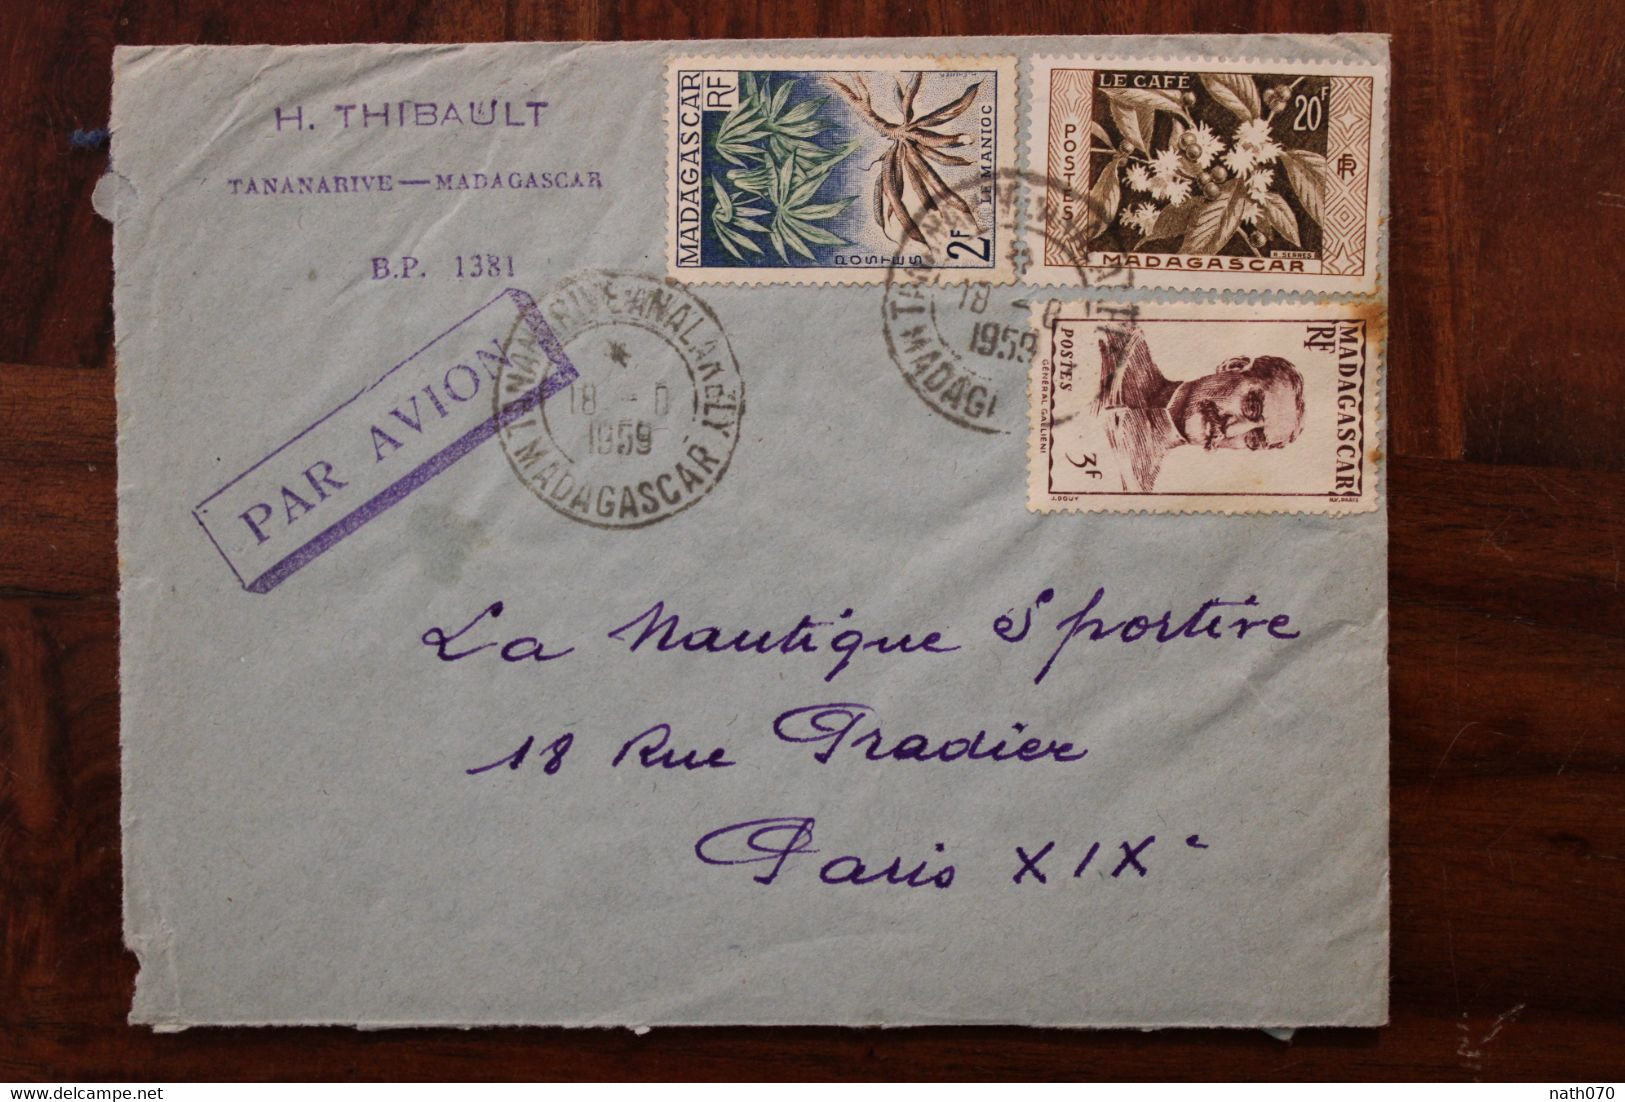 1959 Madagascar France Cover Air Mail Par Avion - Briefe U. Dokumente